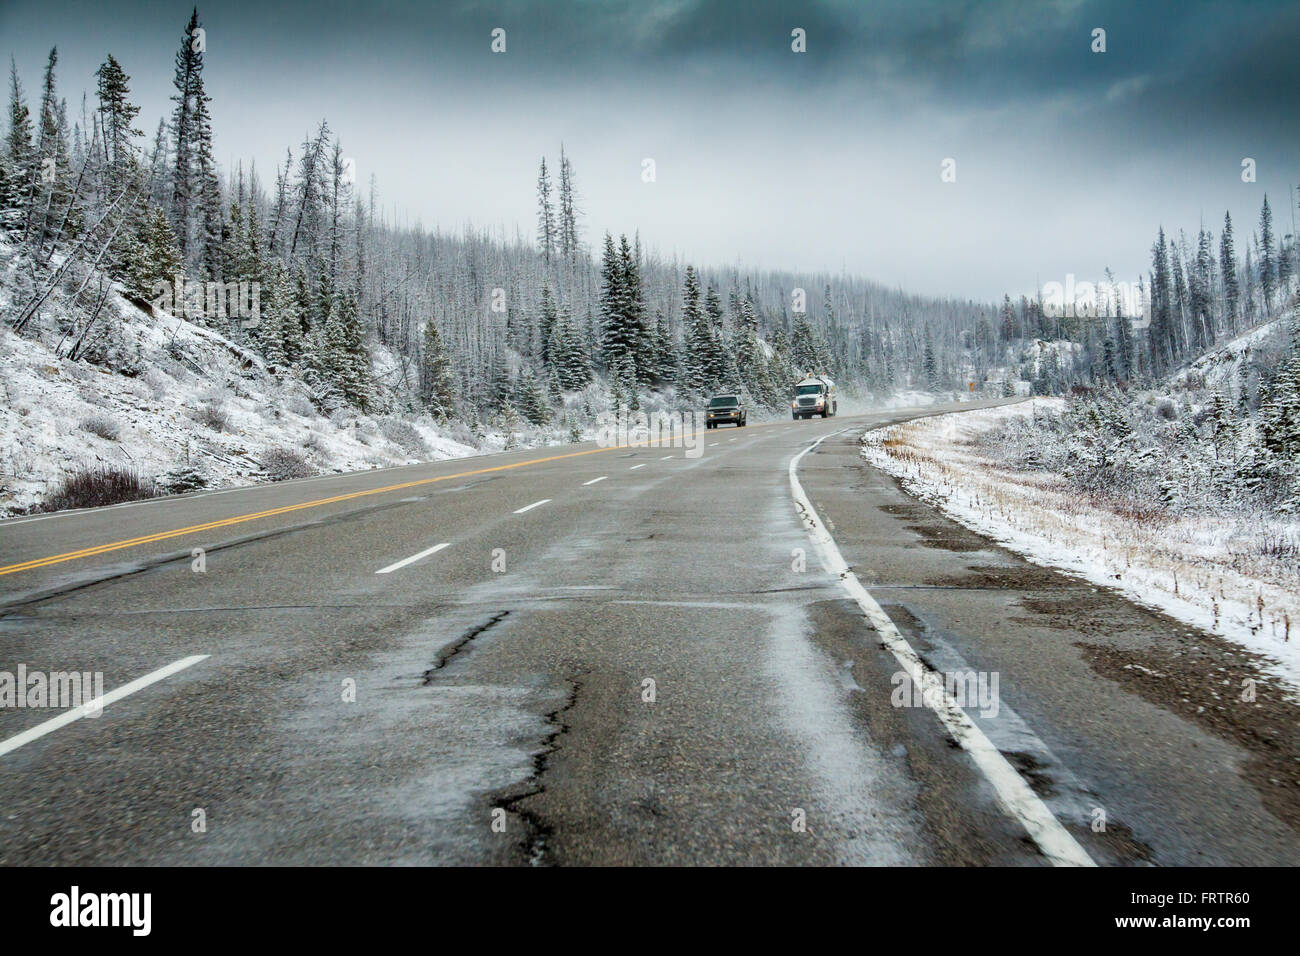 Route panoramique de neige à la fin du mois d'octobre sur l'autoroute 93 de la montagnes Rocheuses dans le Parc National de Kootenay en Colombie-Britannique, Canada. Banque D'Images